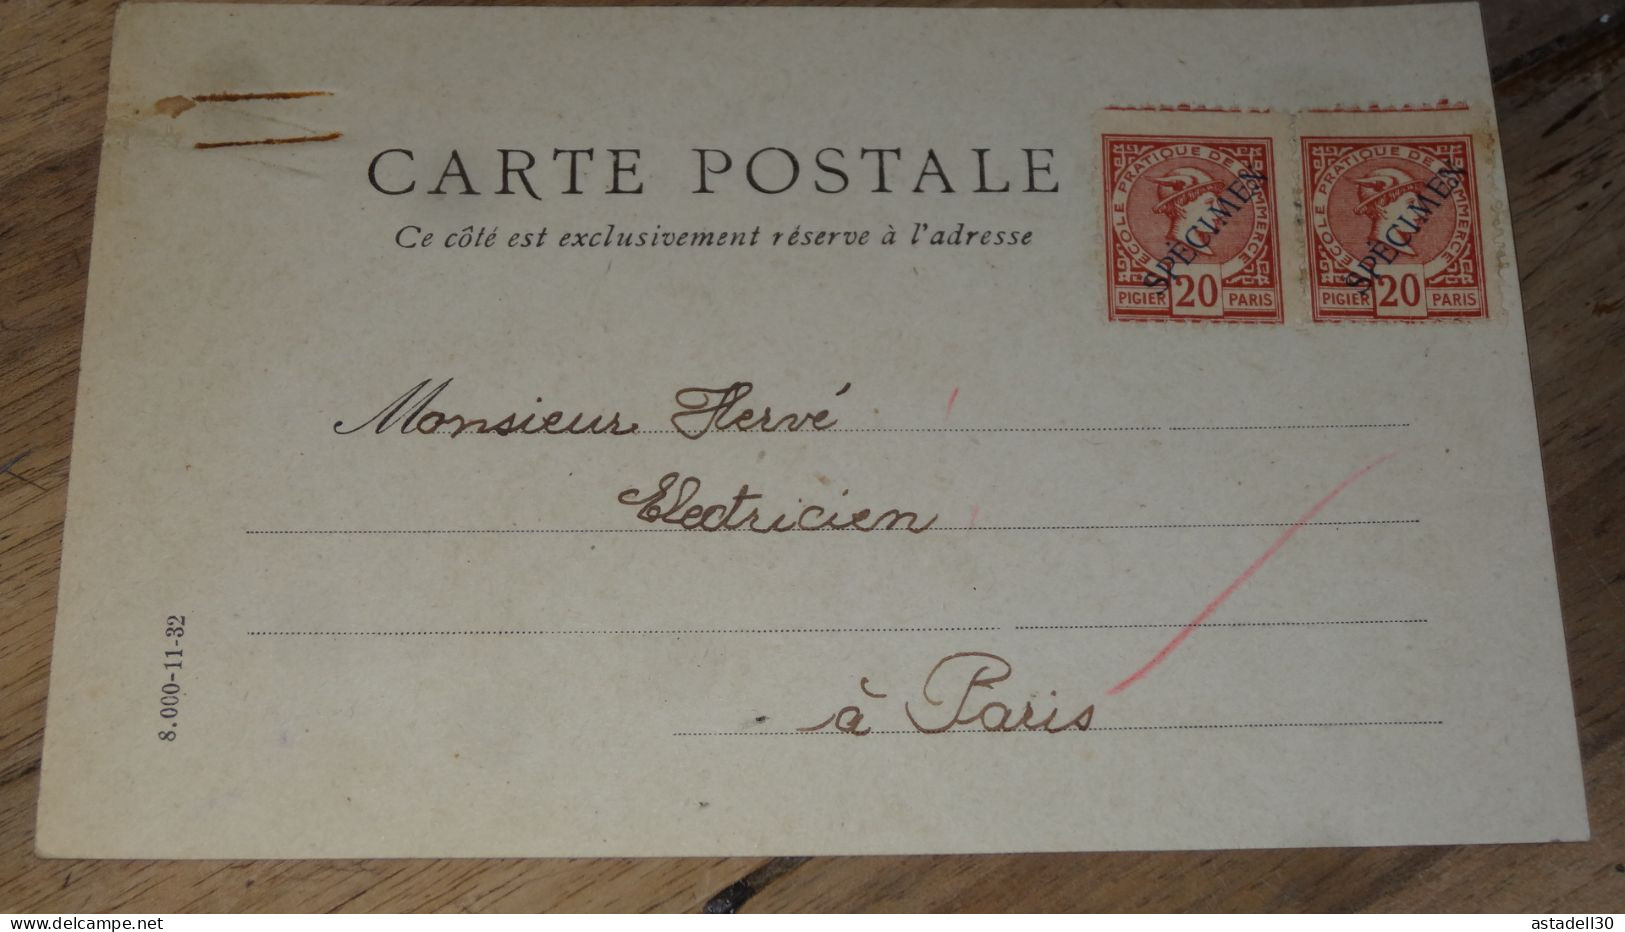 Carte Postale Fictif, Specimen, Ecole Commerce, Paire De 20c - 1934 ......... ..... 240424 ....... CL-12-10 - Finti